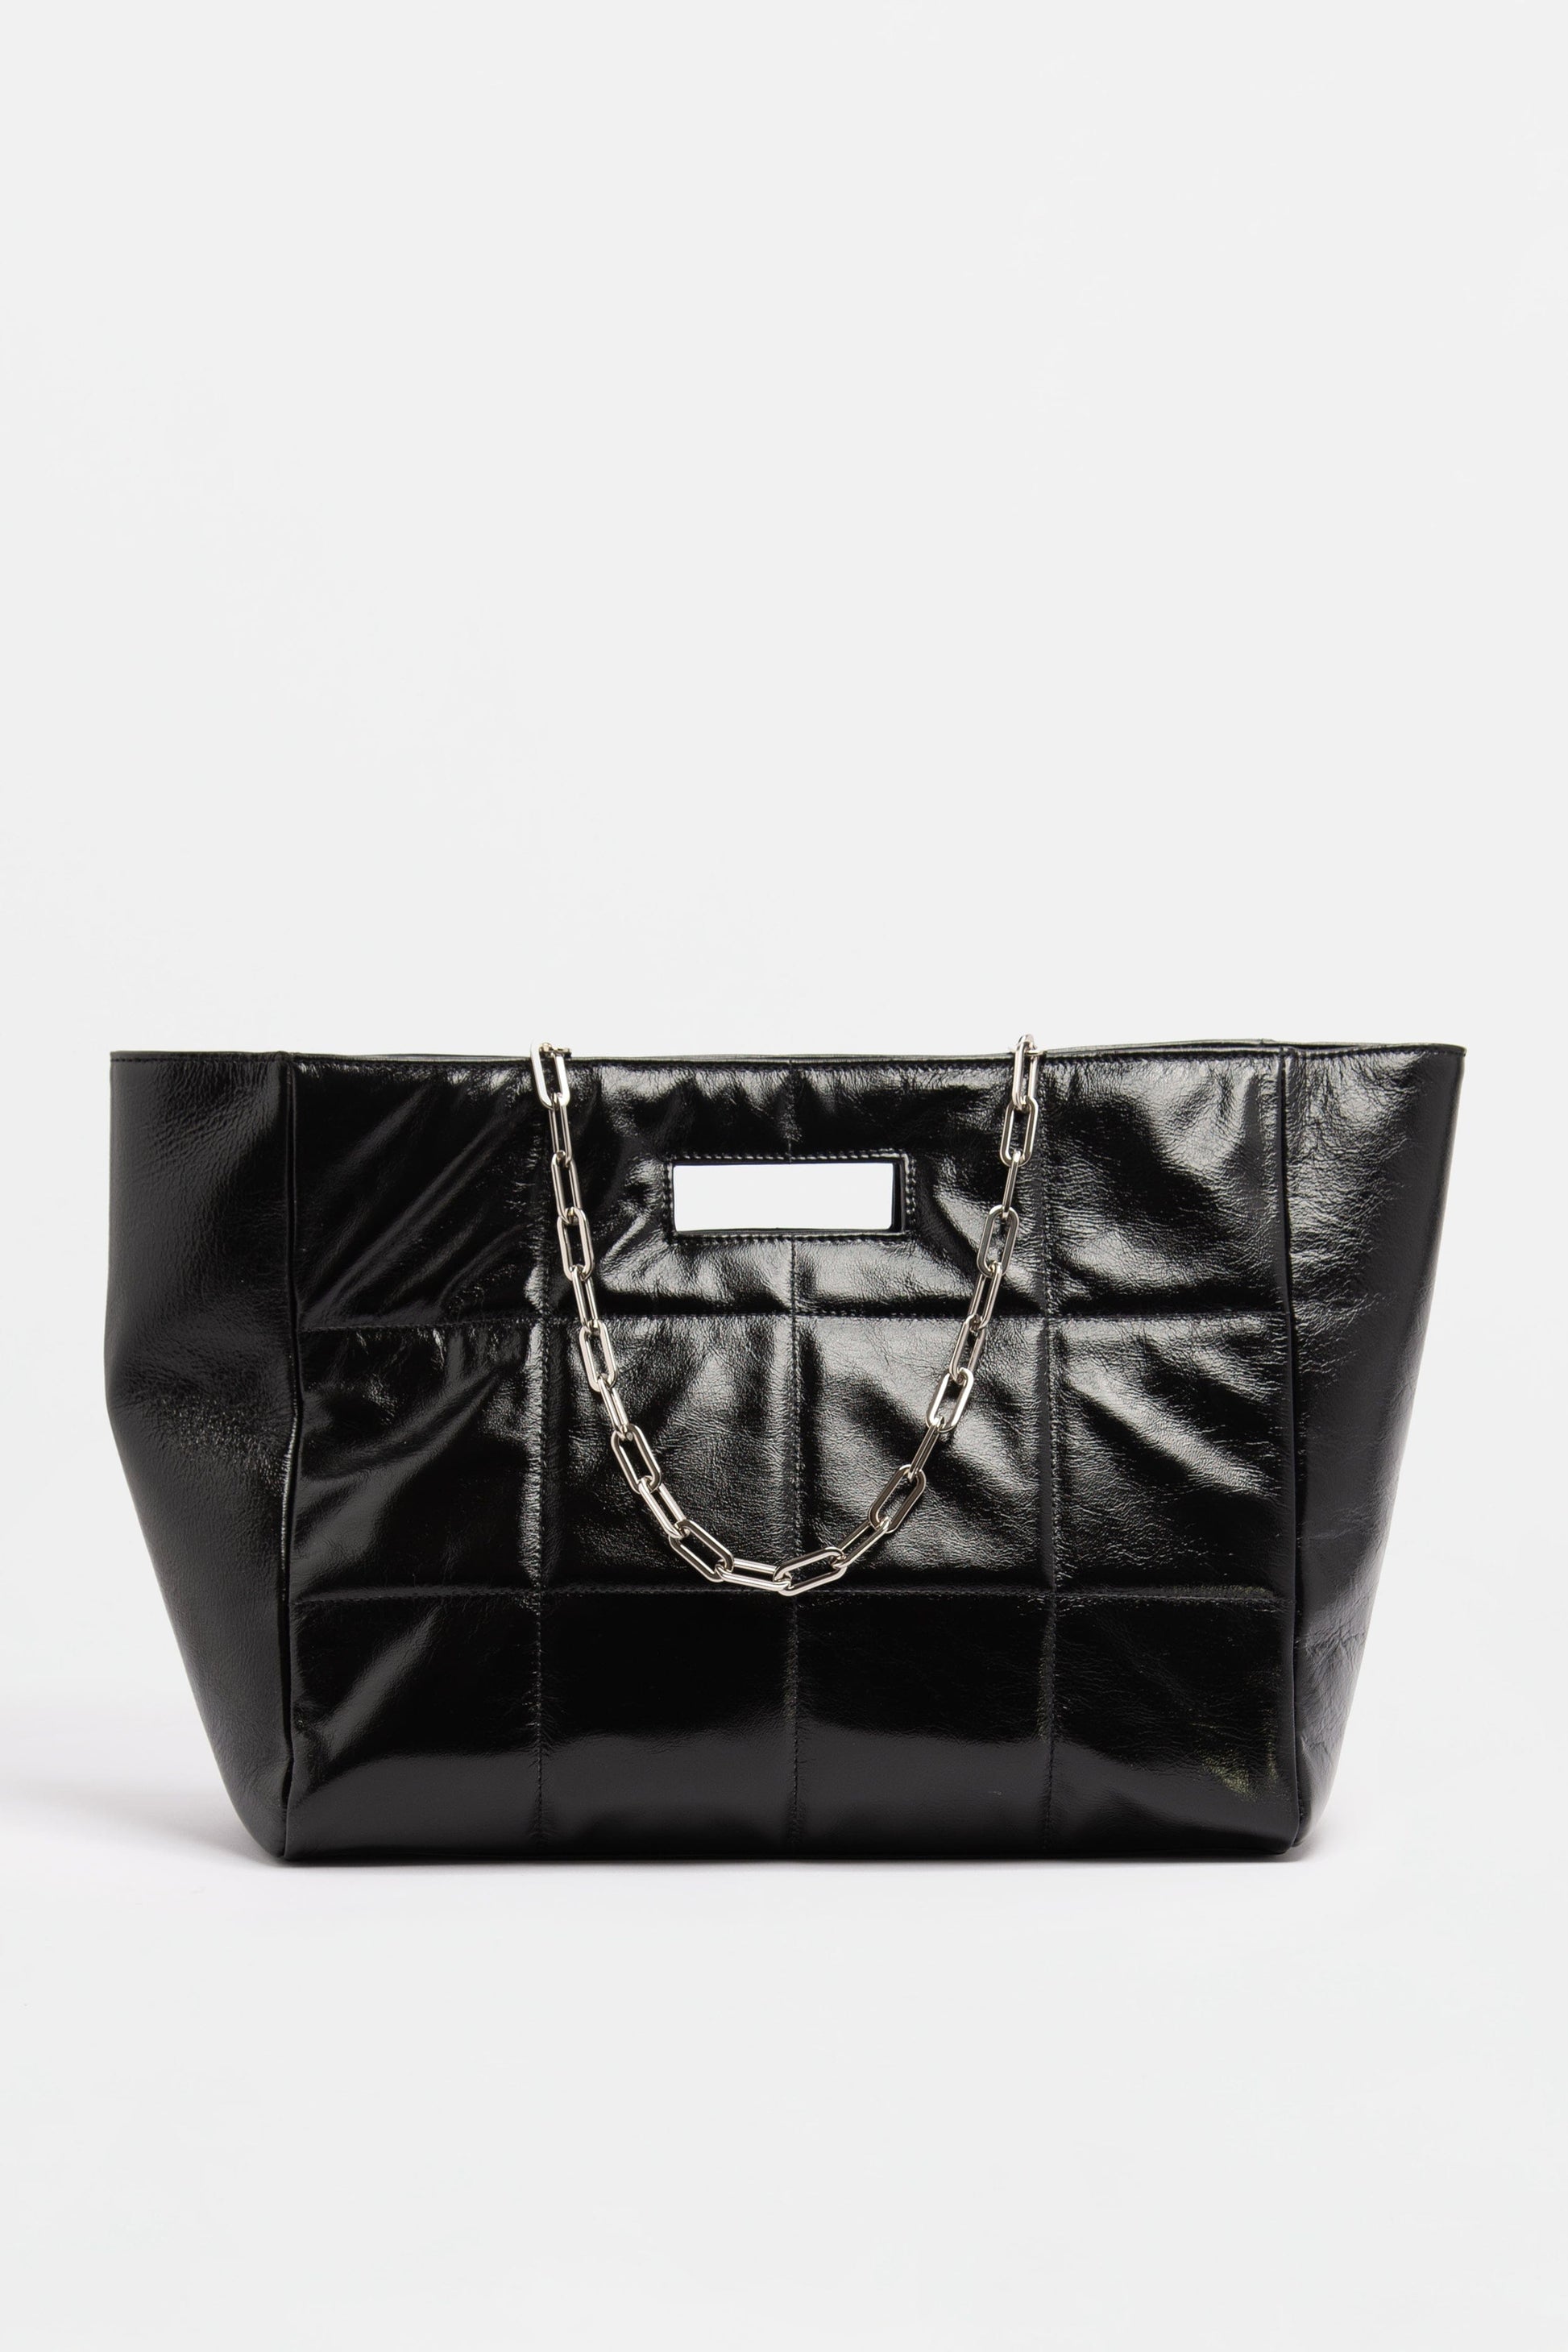 The QUILTED BAG SOFT Vintage Black - JULIA SKERGETH